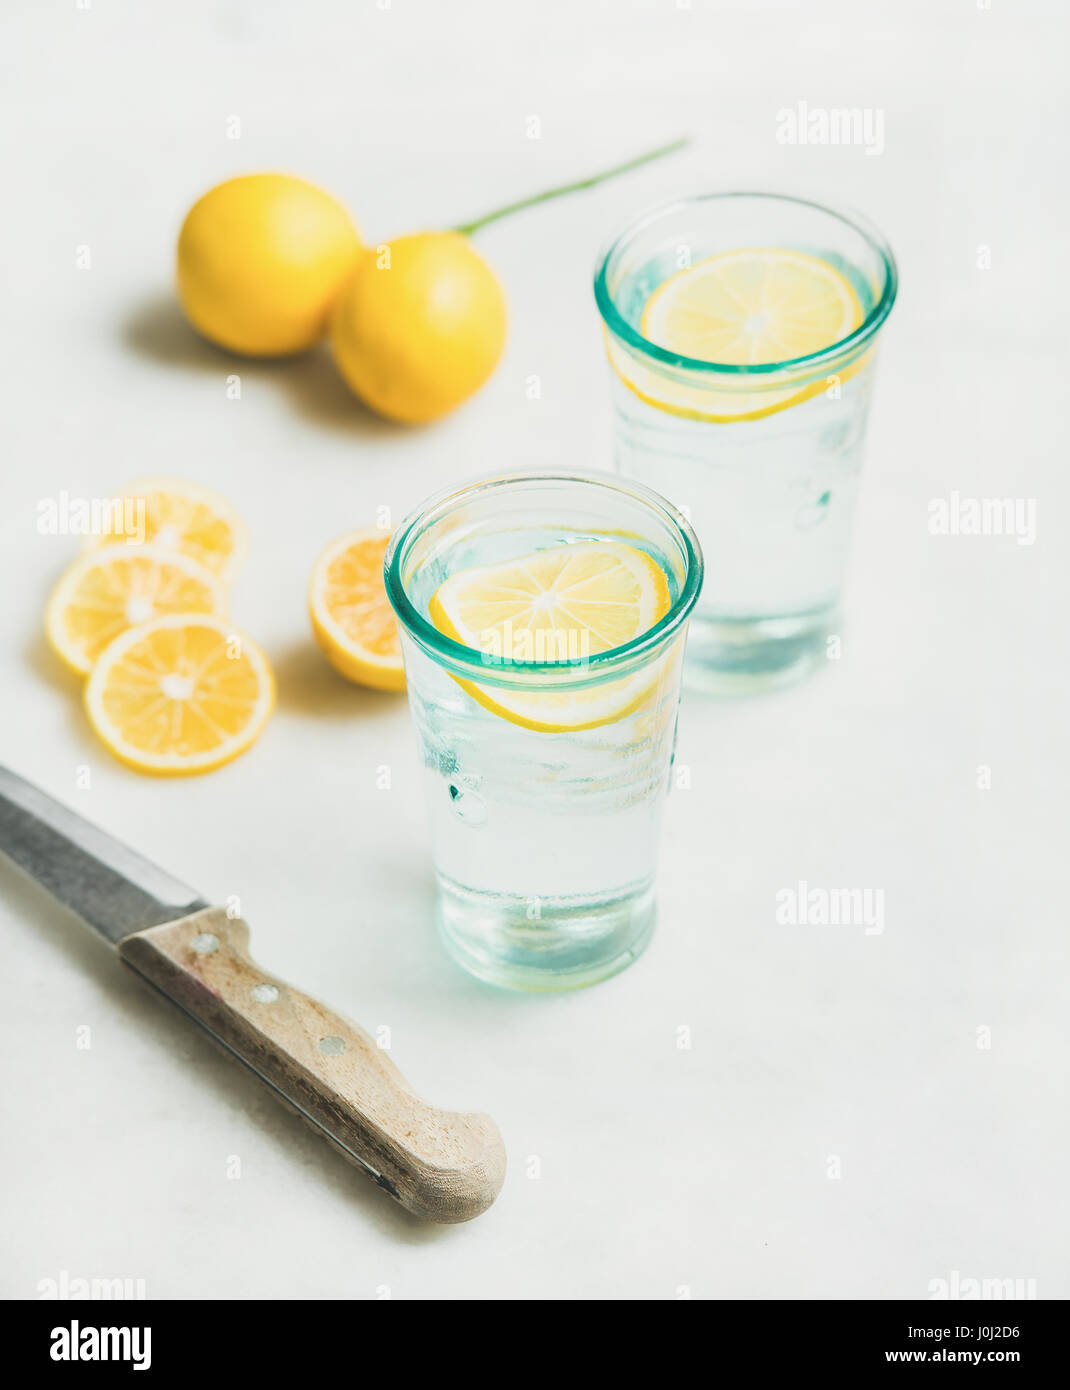 Morning detox lemon water in glasses and fresh lemons Stock Photo